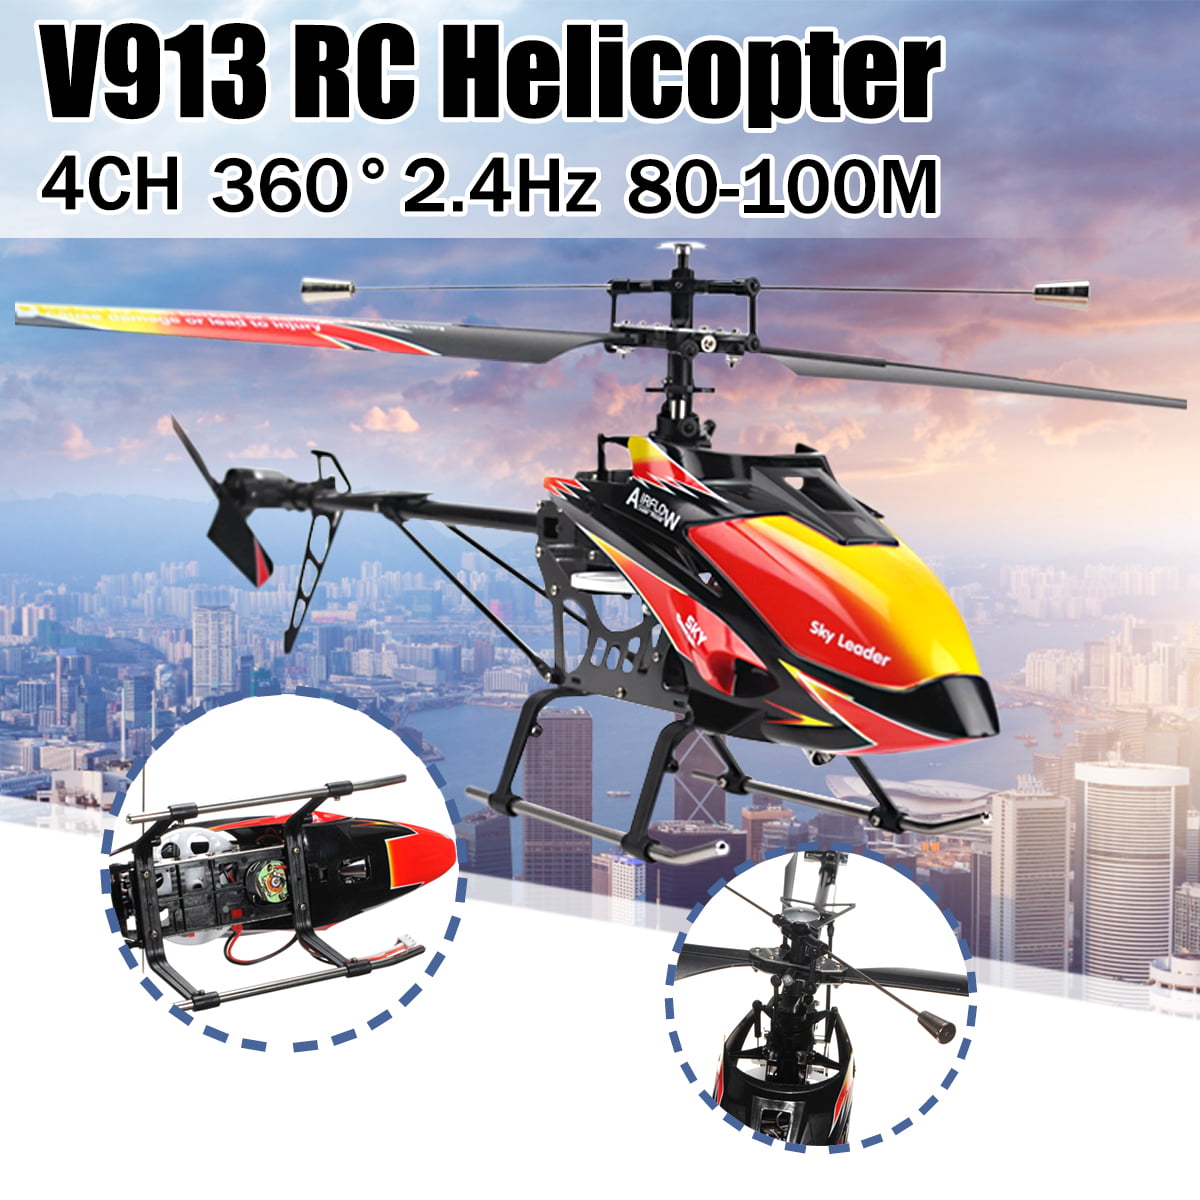 v913 helicopter